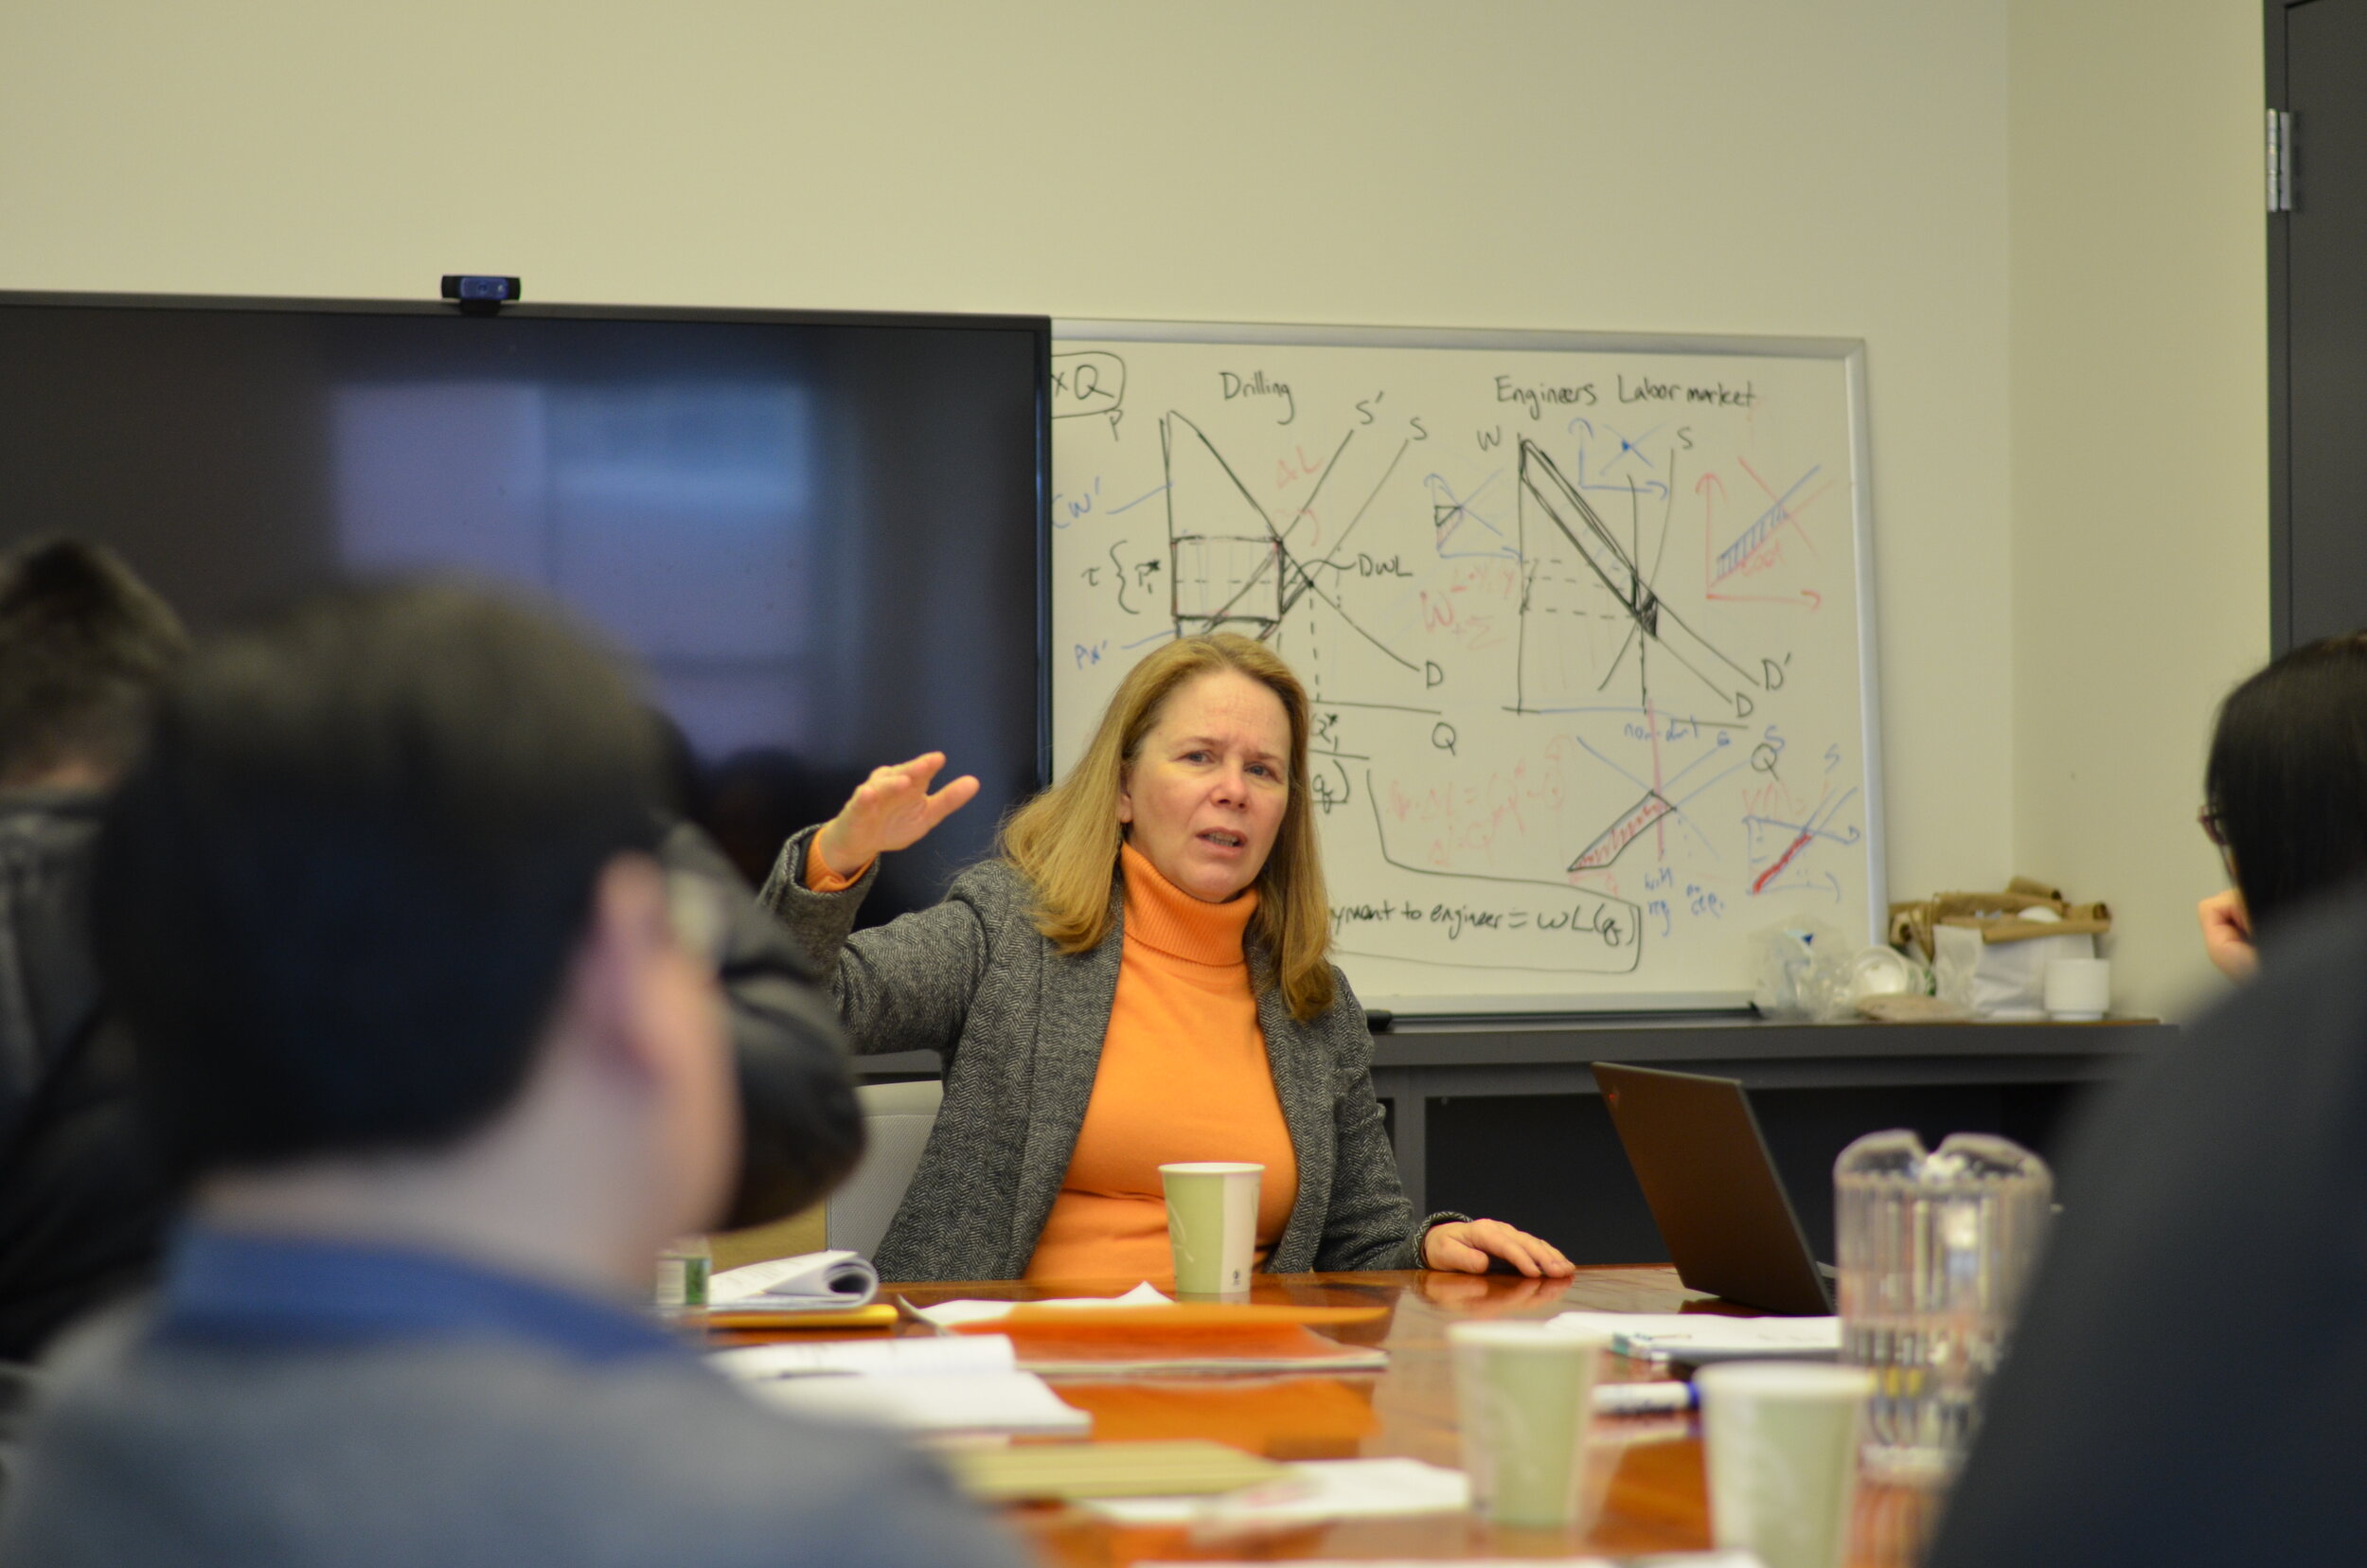 NYU Law Professor Cynthia Estlund in discussion